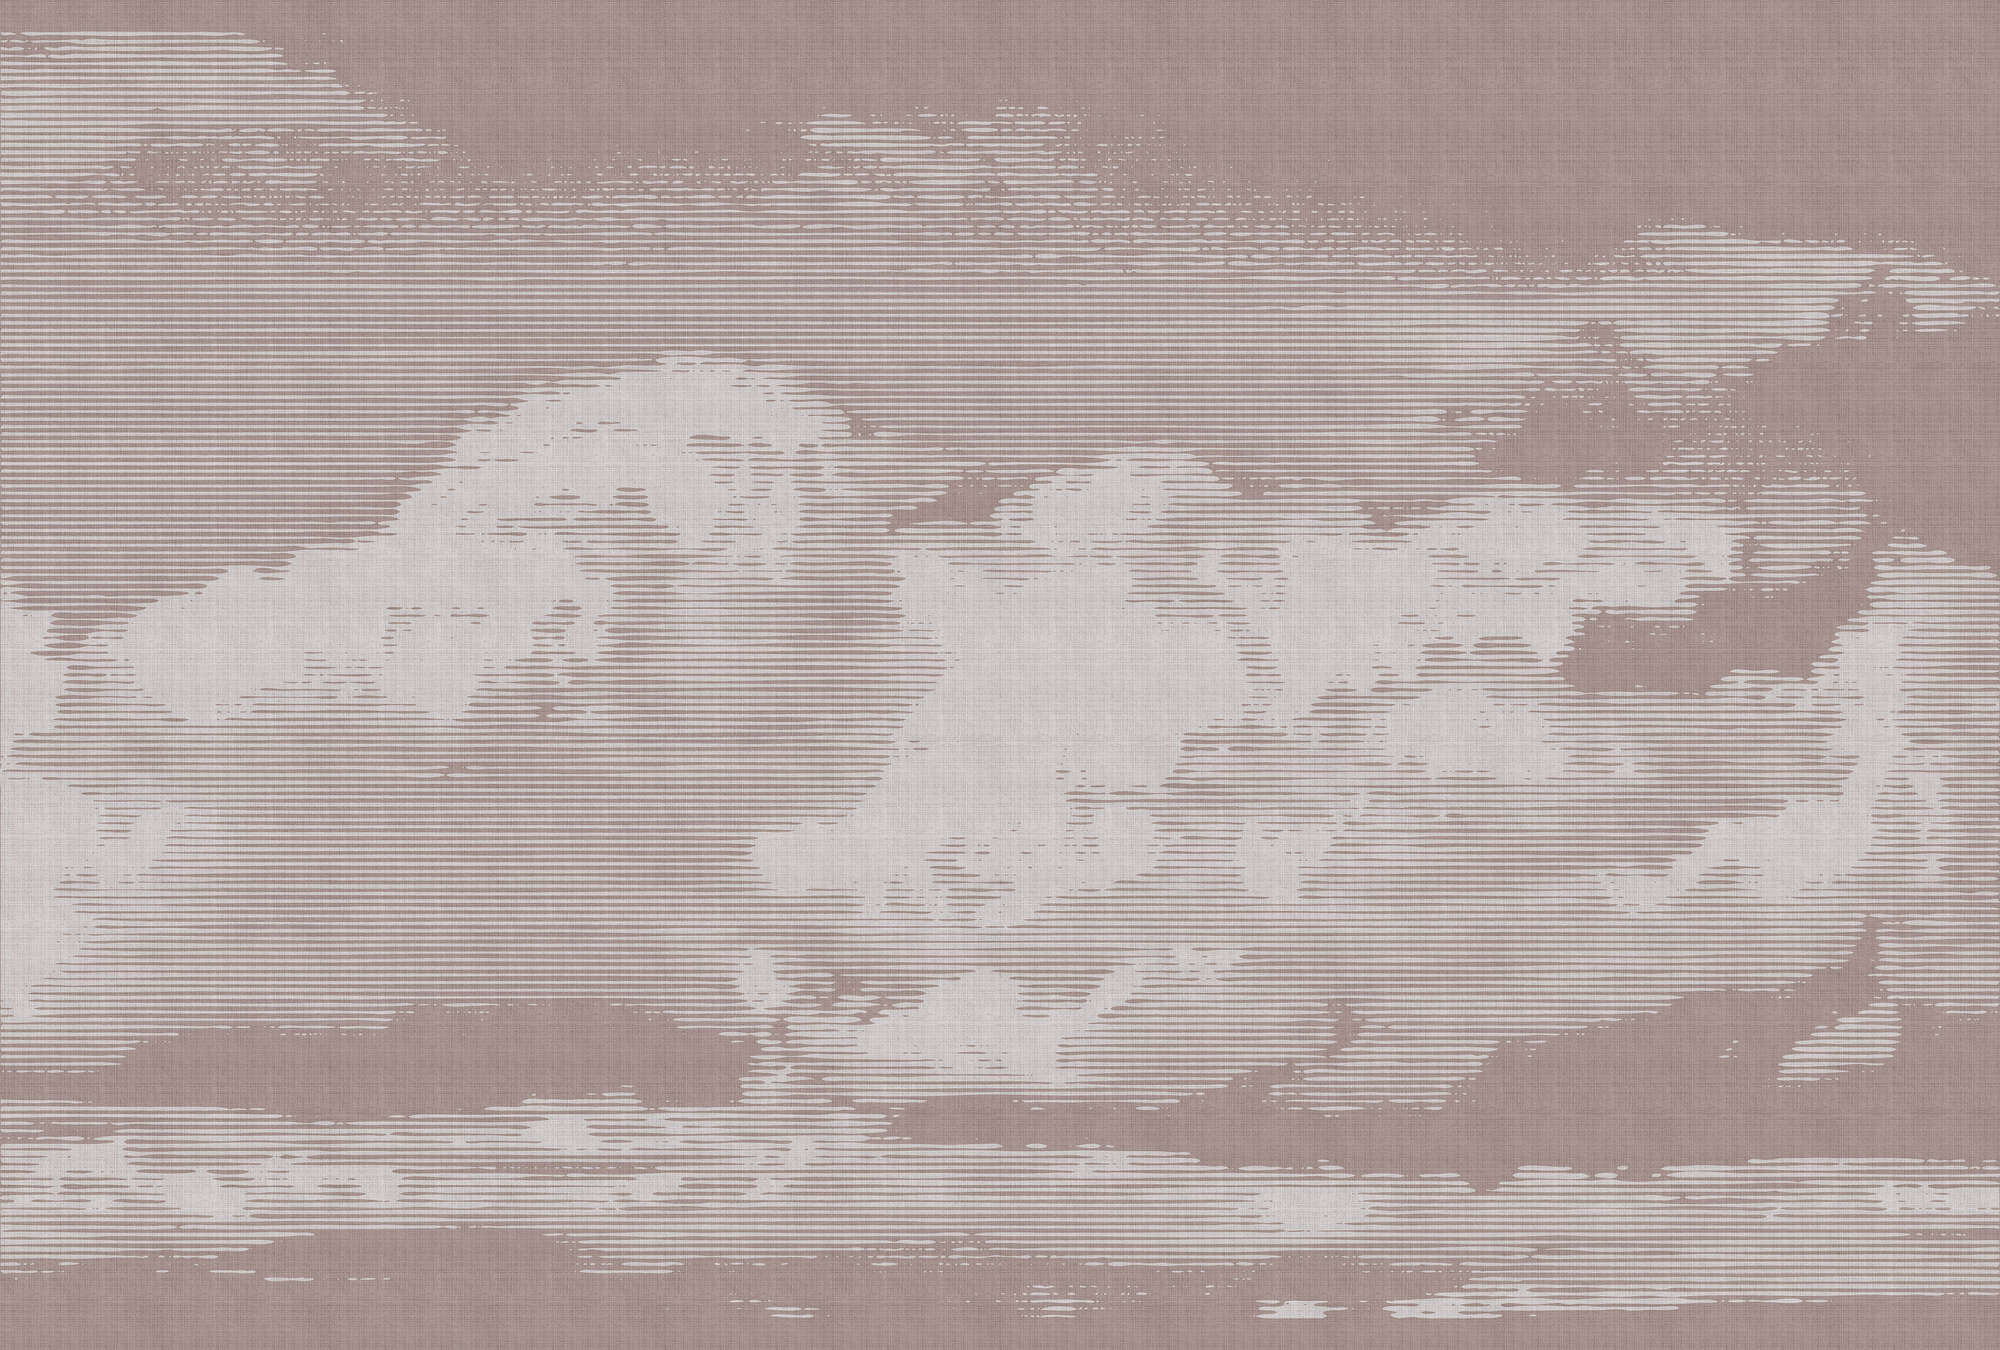             Clouds 3 - Himmlische Fototapete mit Wolkenmotiv - Naturleinen Struktur – Grau, Rosa | Perlmutt Glattvlies
        